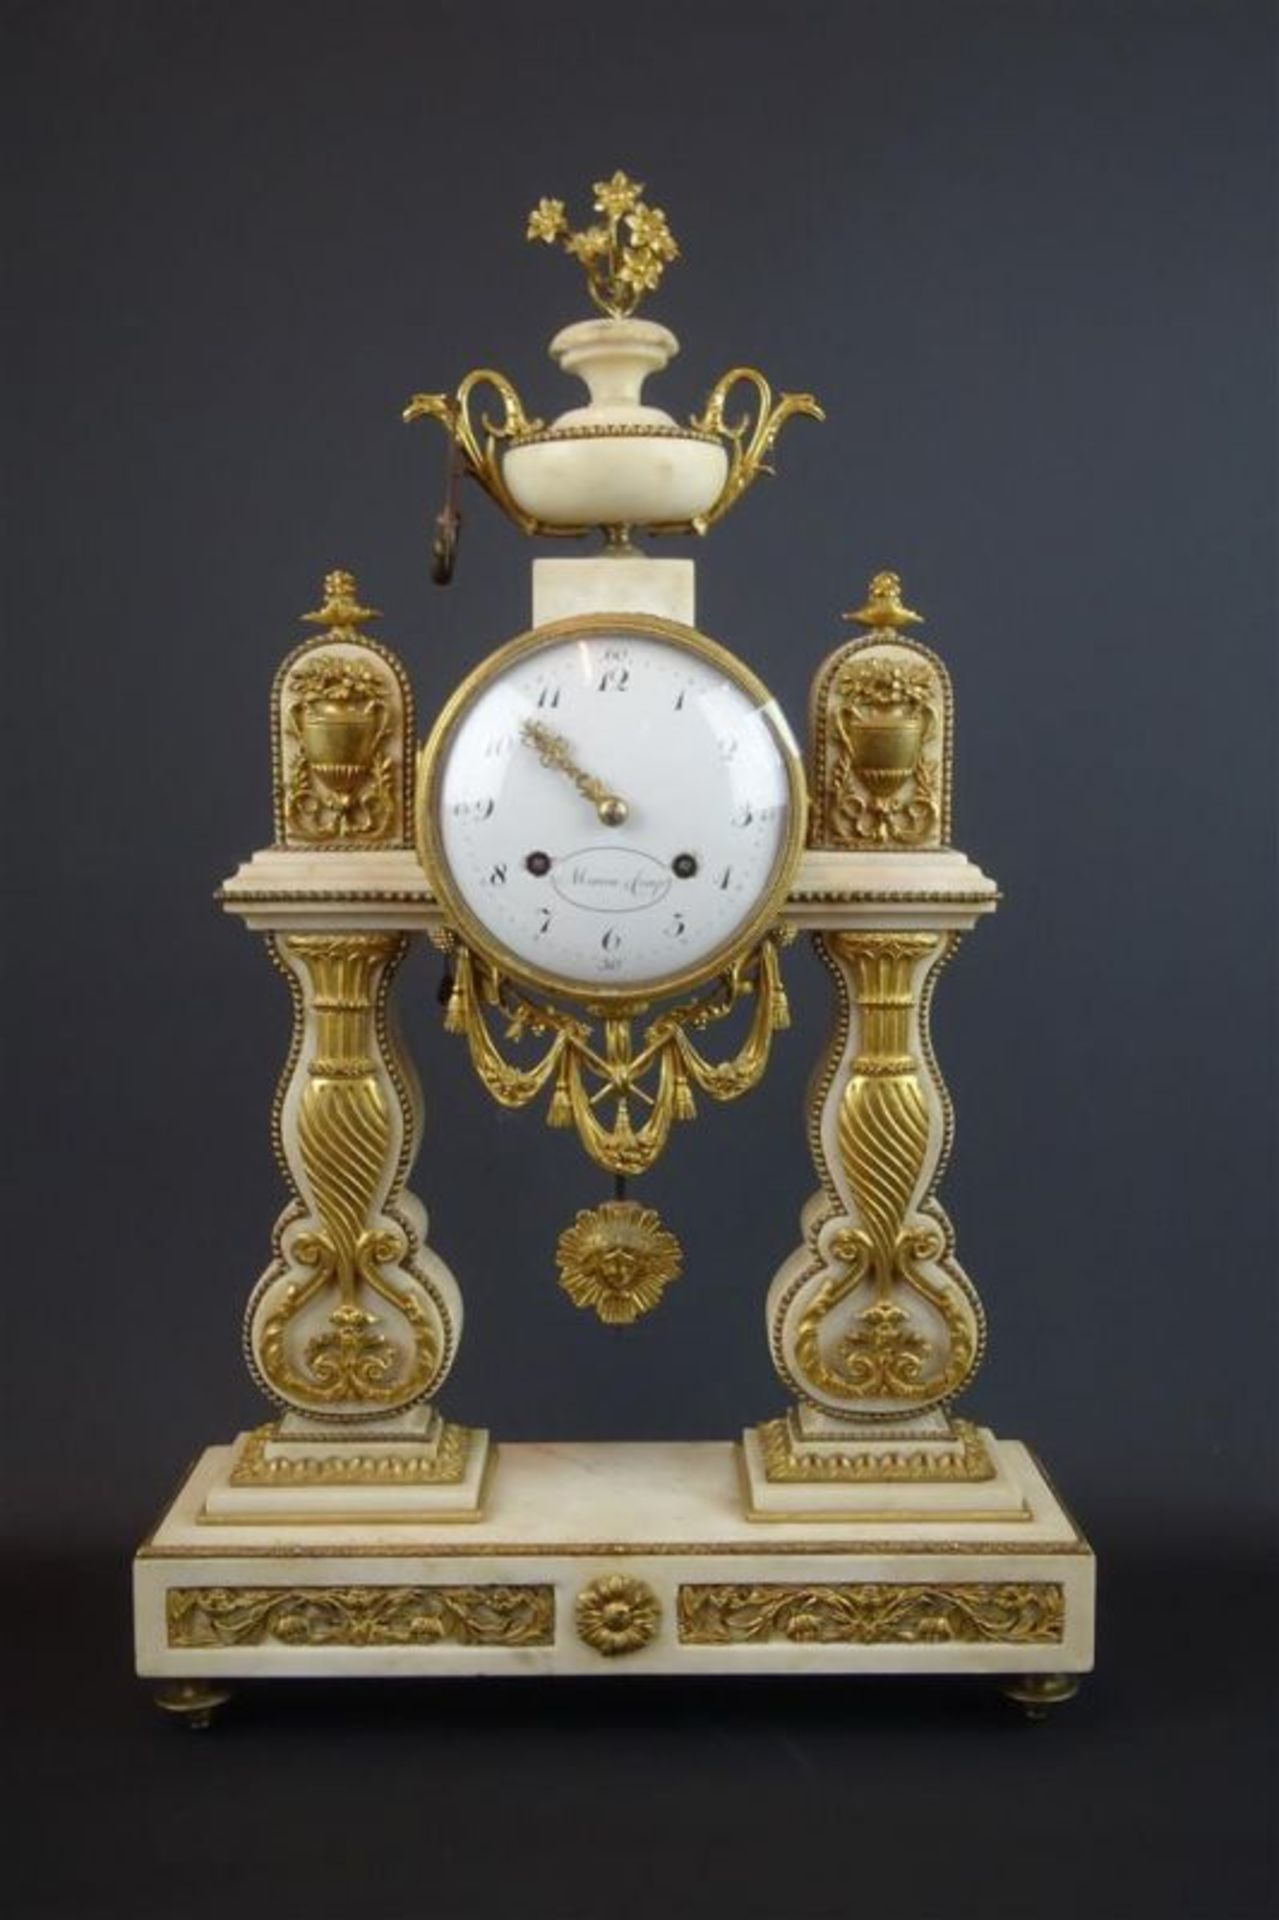 albasten Louis XVI kolompendule met emaille wijzerplaat en verguld bronzen ornamenten, adres: